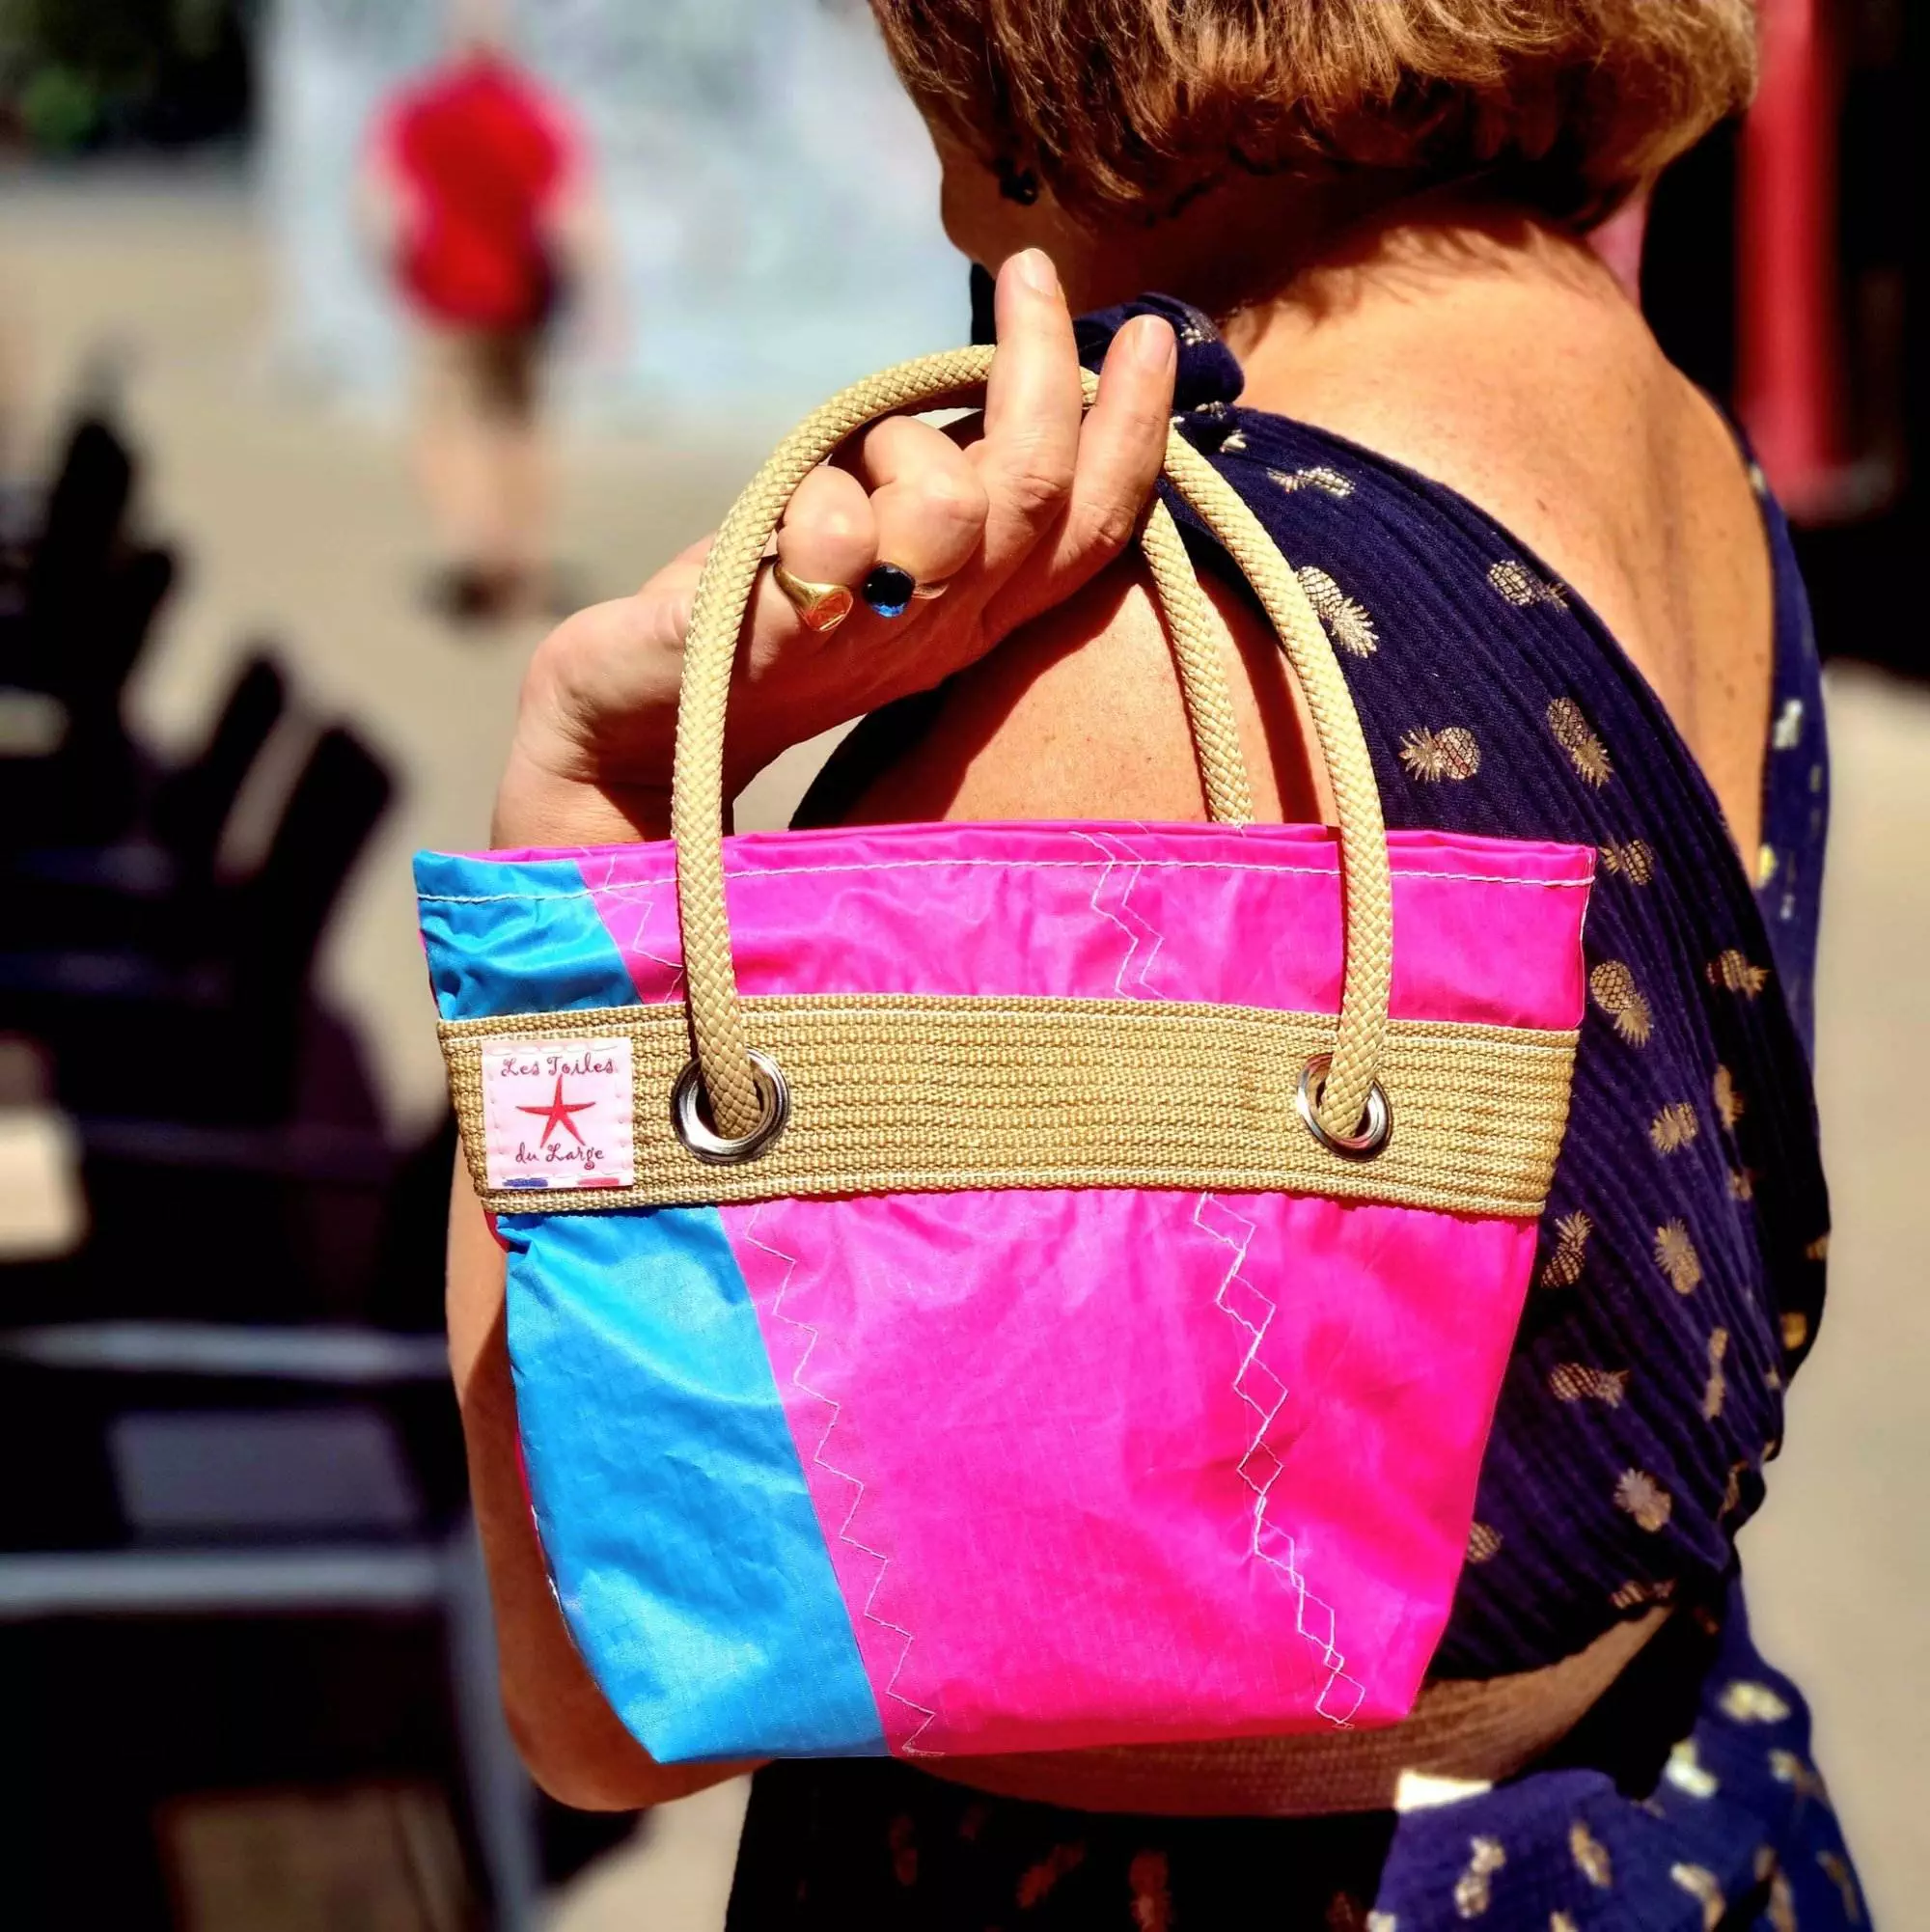 sac à mains en voile recyclée multicolore